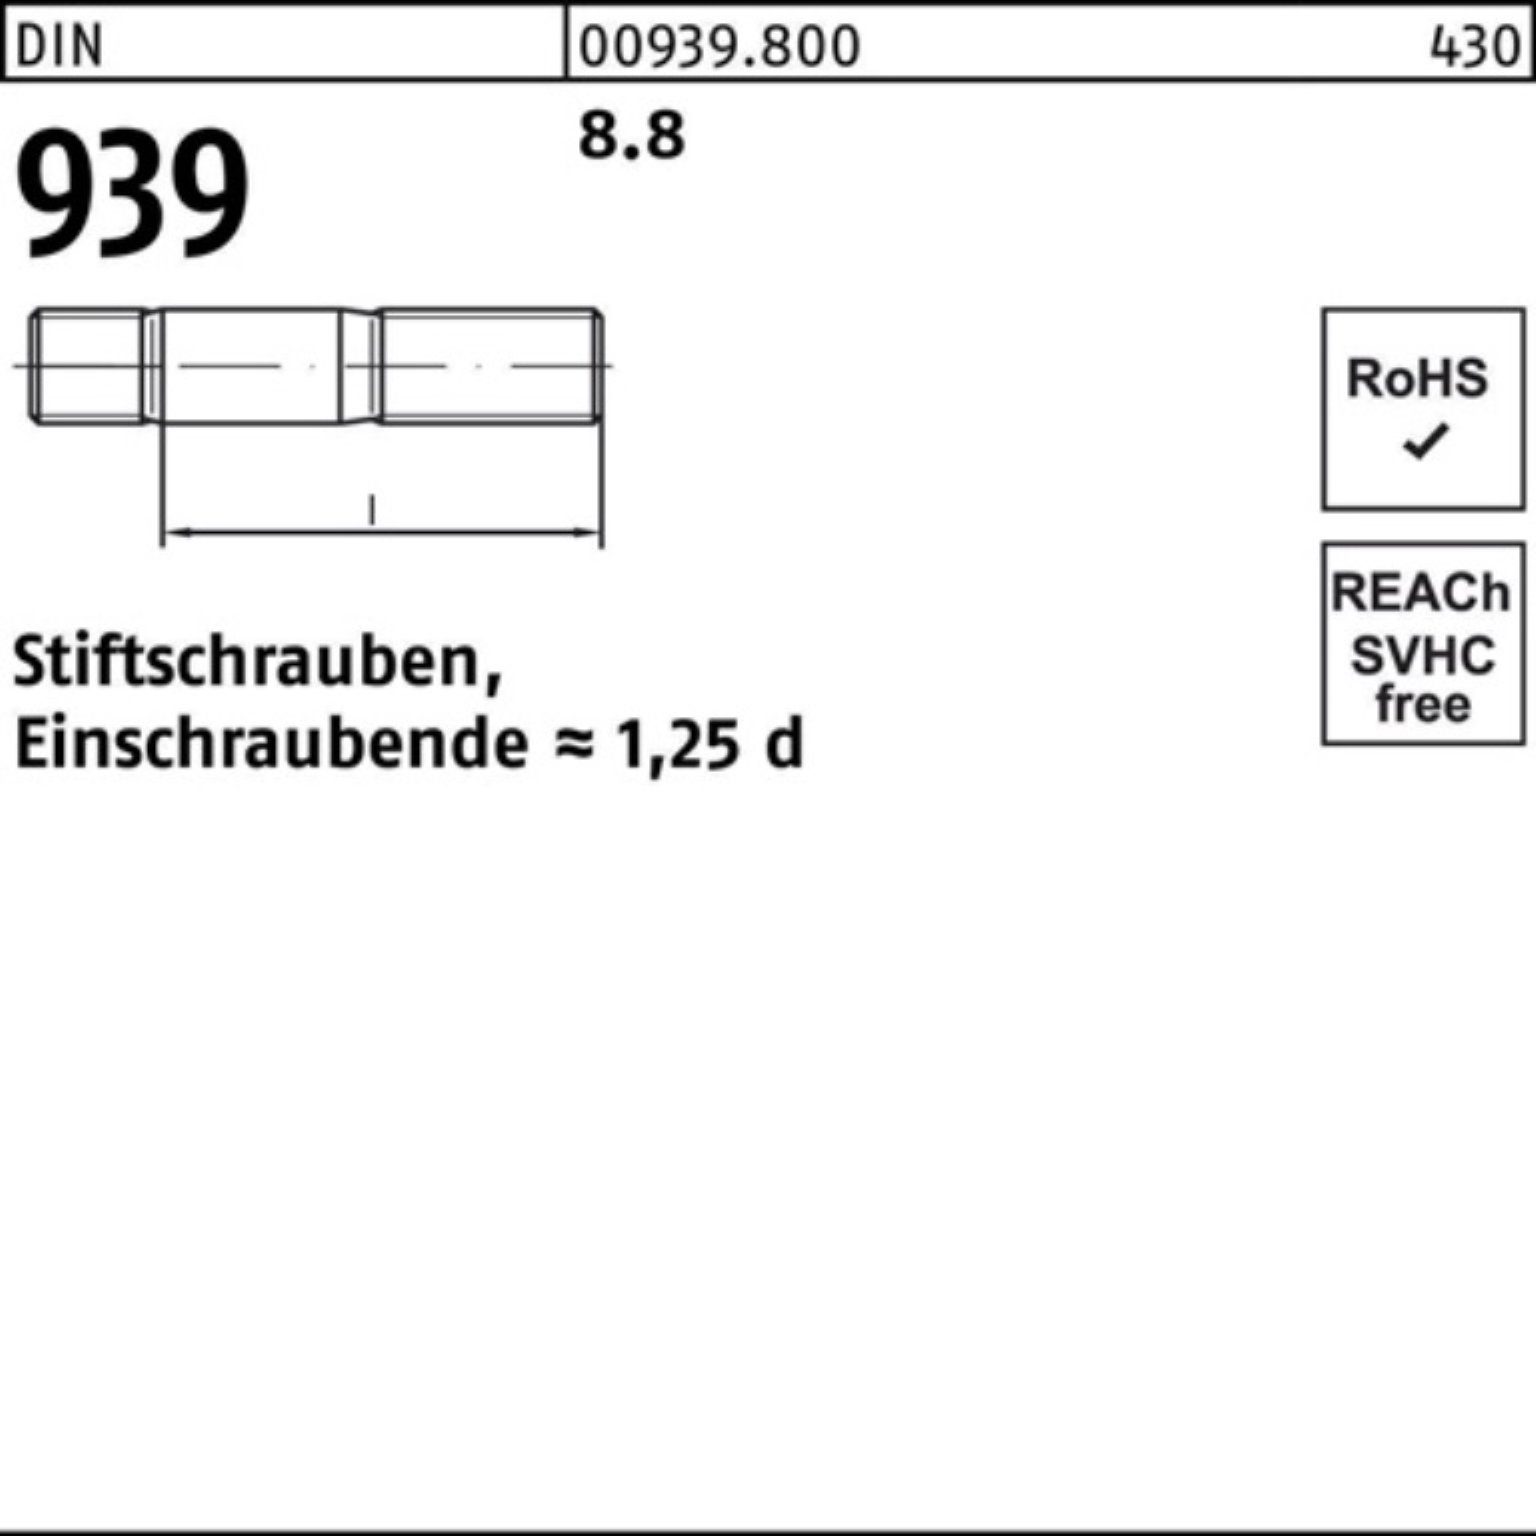 Reyher Stiftschraube M20x 75 Pack Einschraubende=1,25d Stiftschraube 939 10 DIN 8.8 100er S